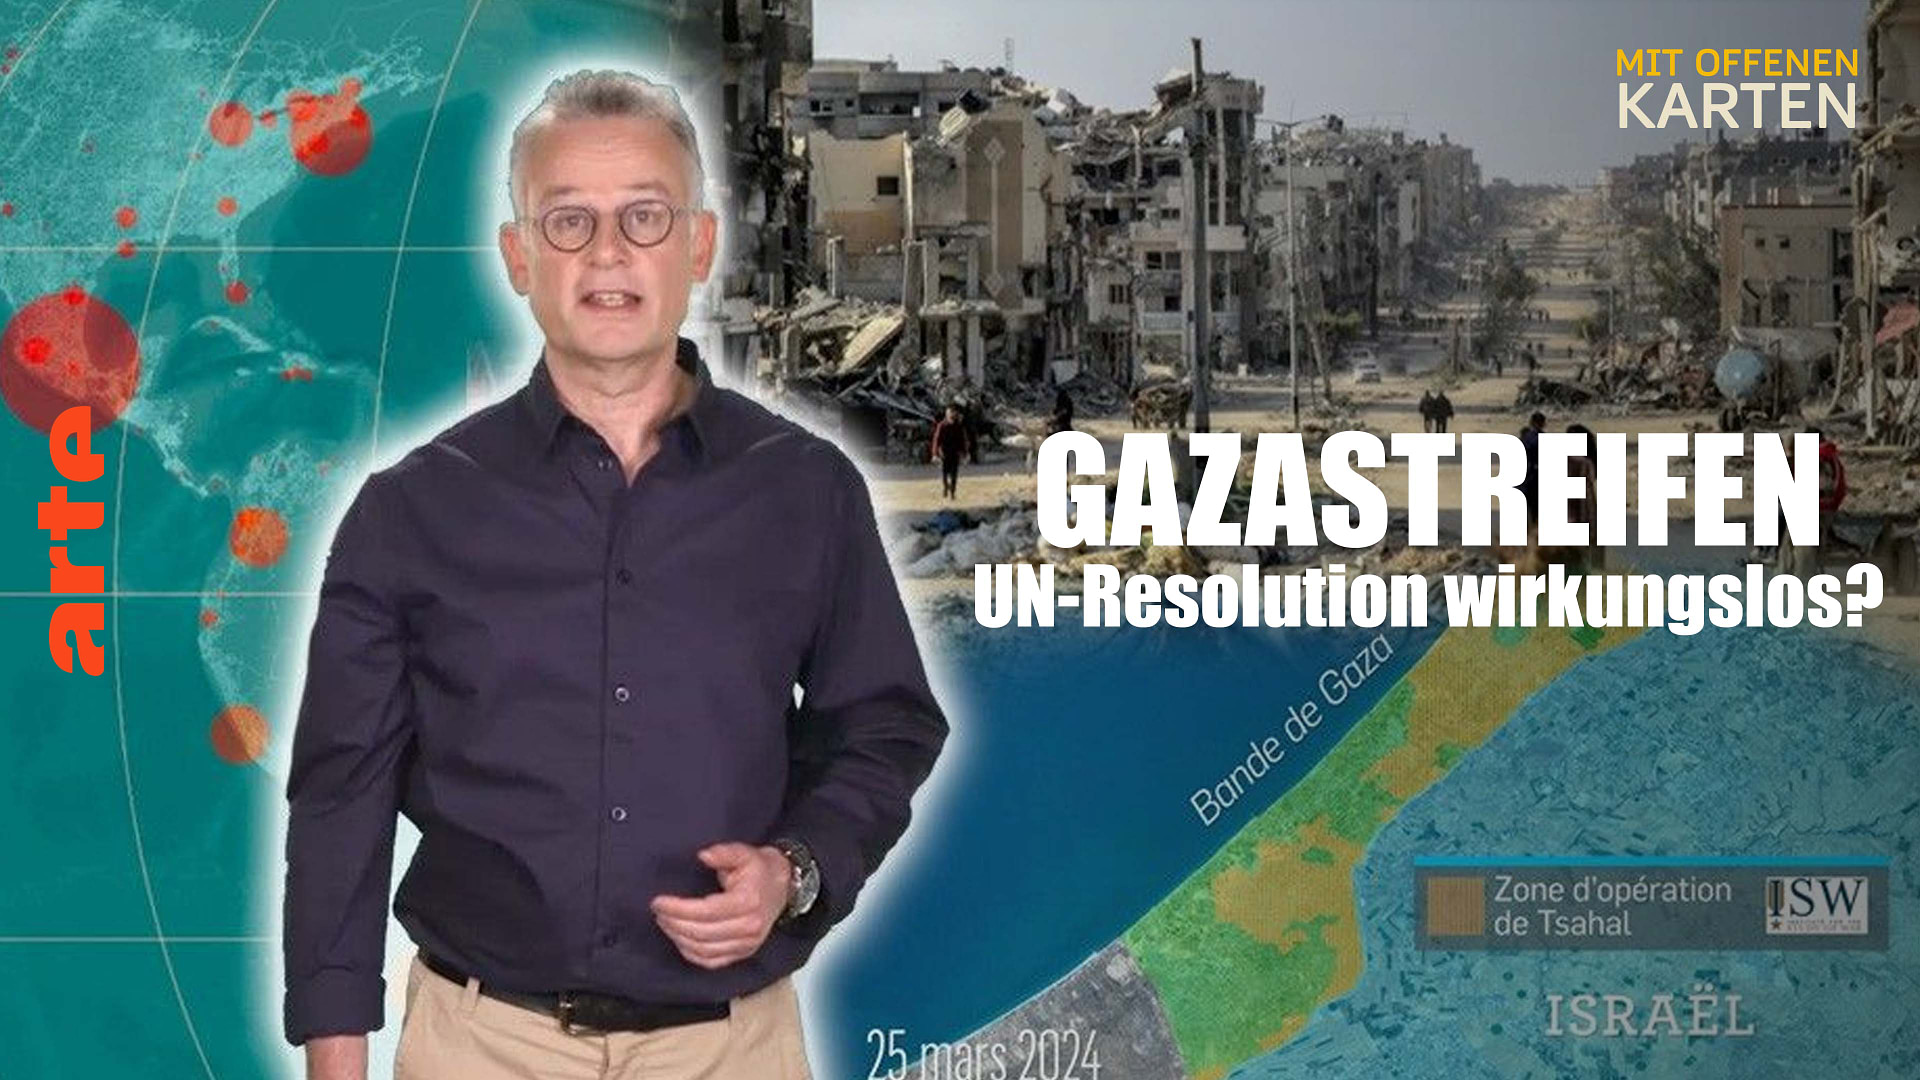 Gazastreifen: UN-Resolution wirkungslos?